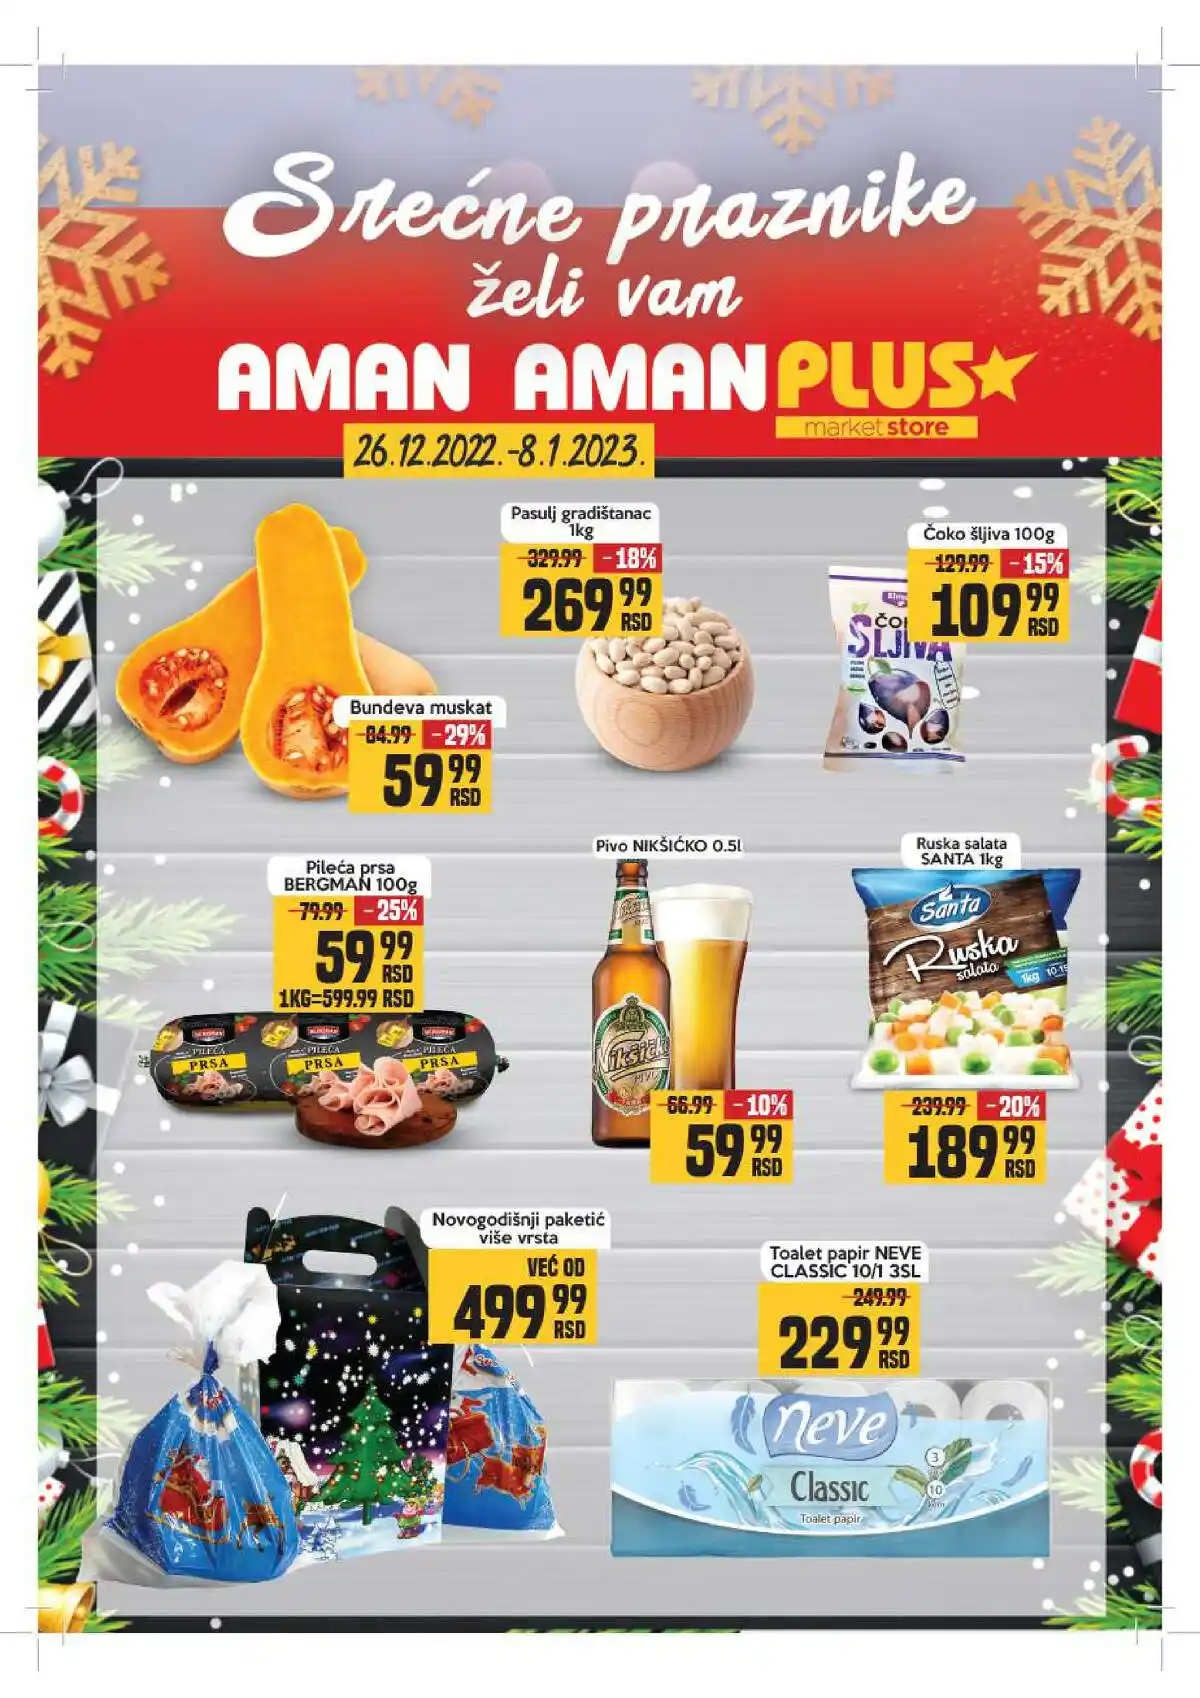 aman-market